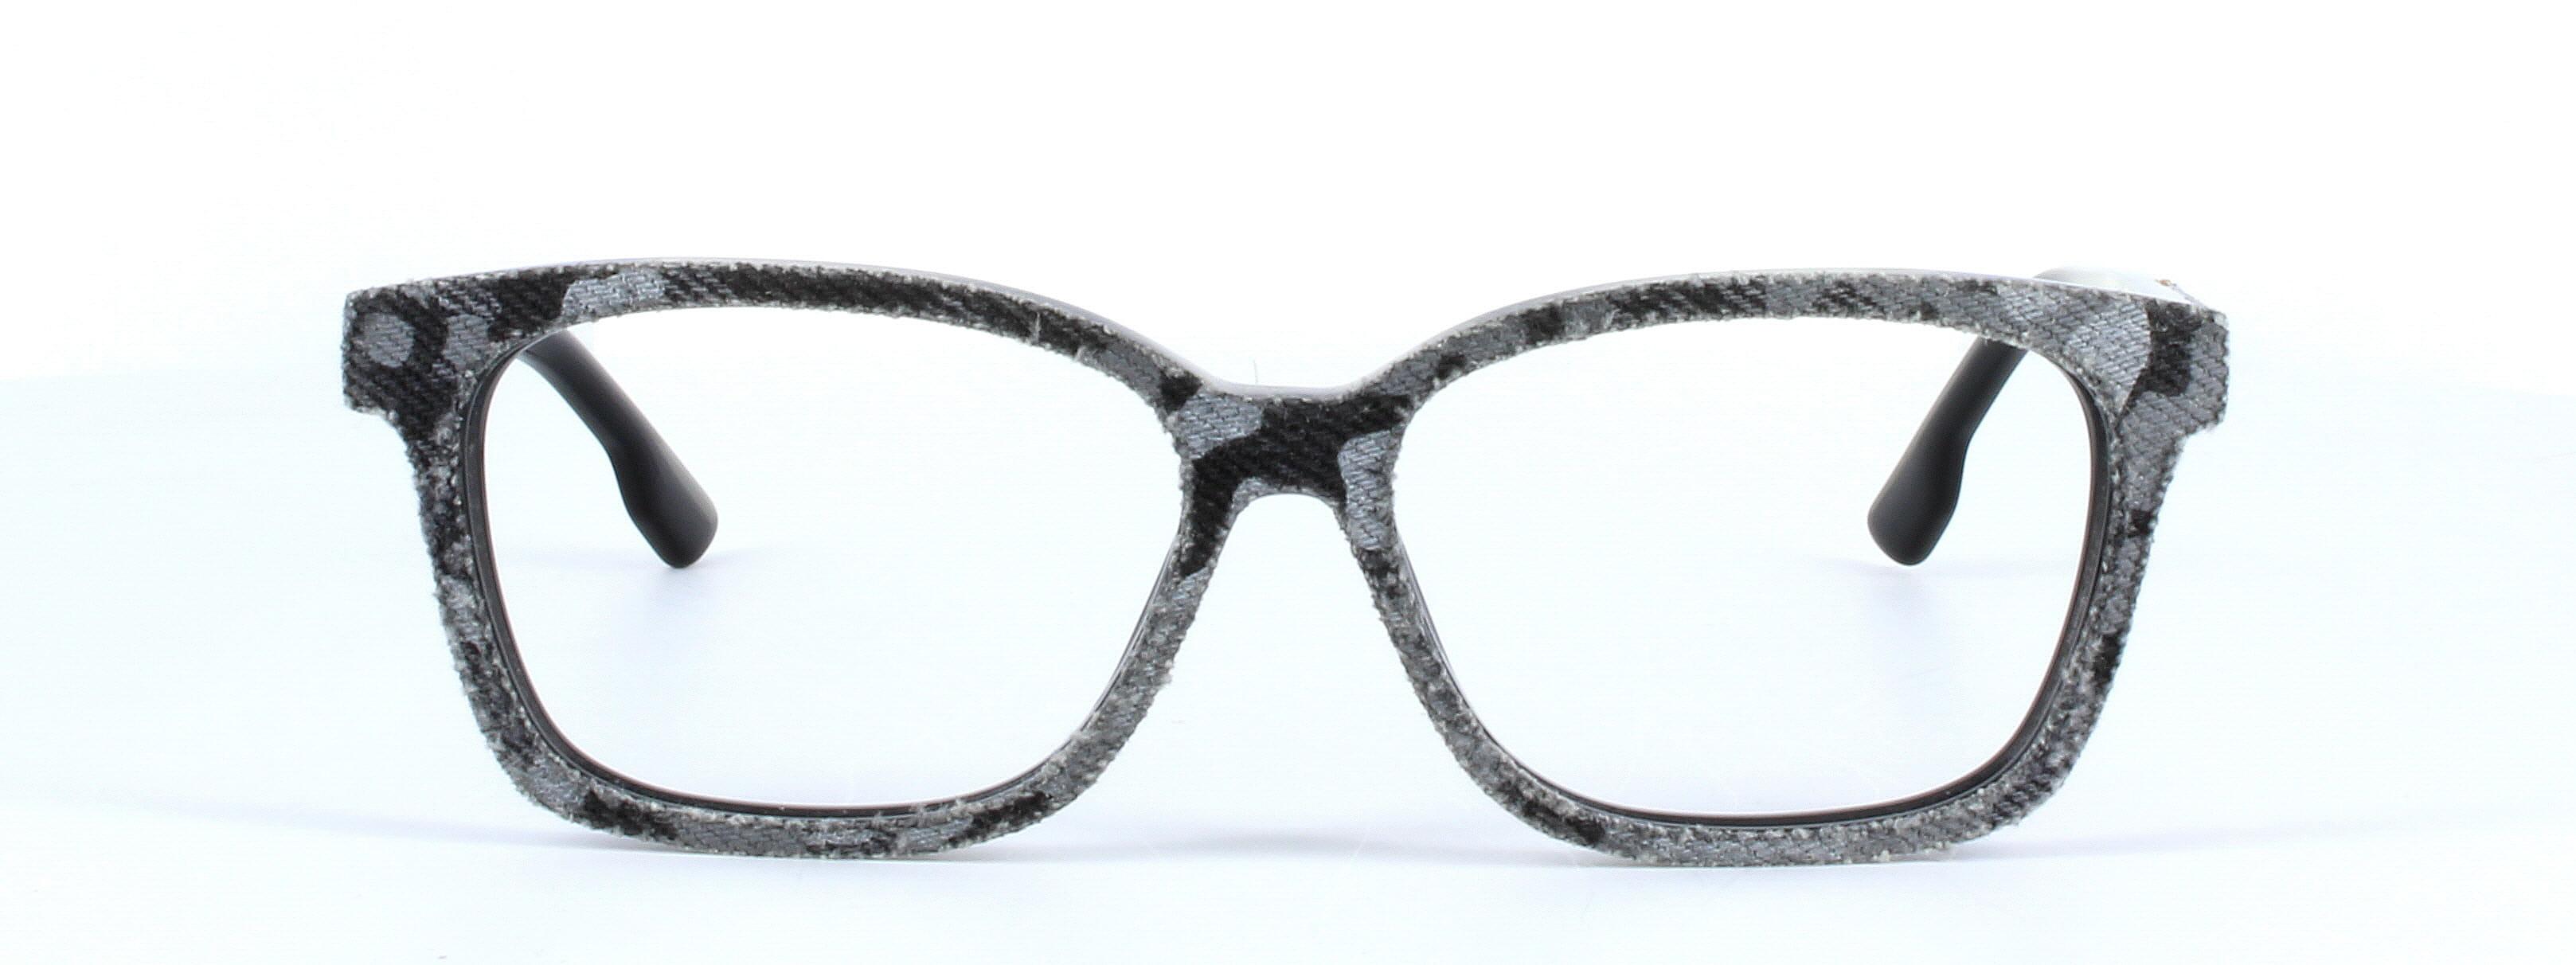 Diesel denimeye 5137 - ladies designer glasses in black/grey denim on acetate - image view 5